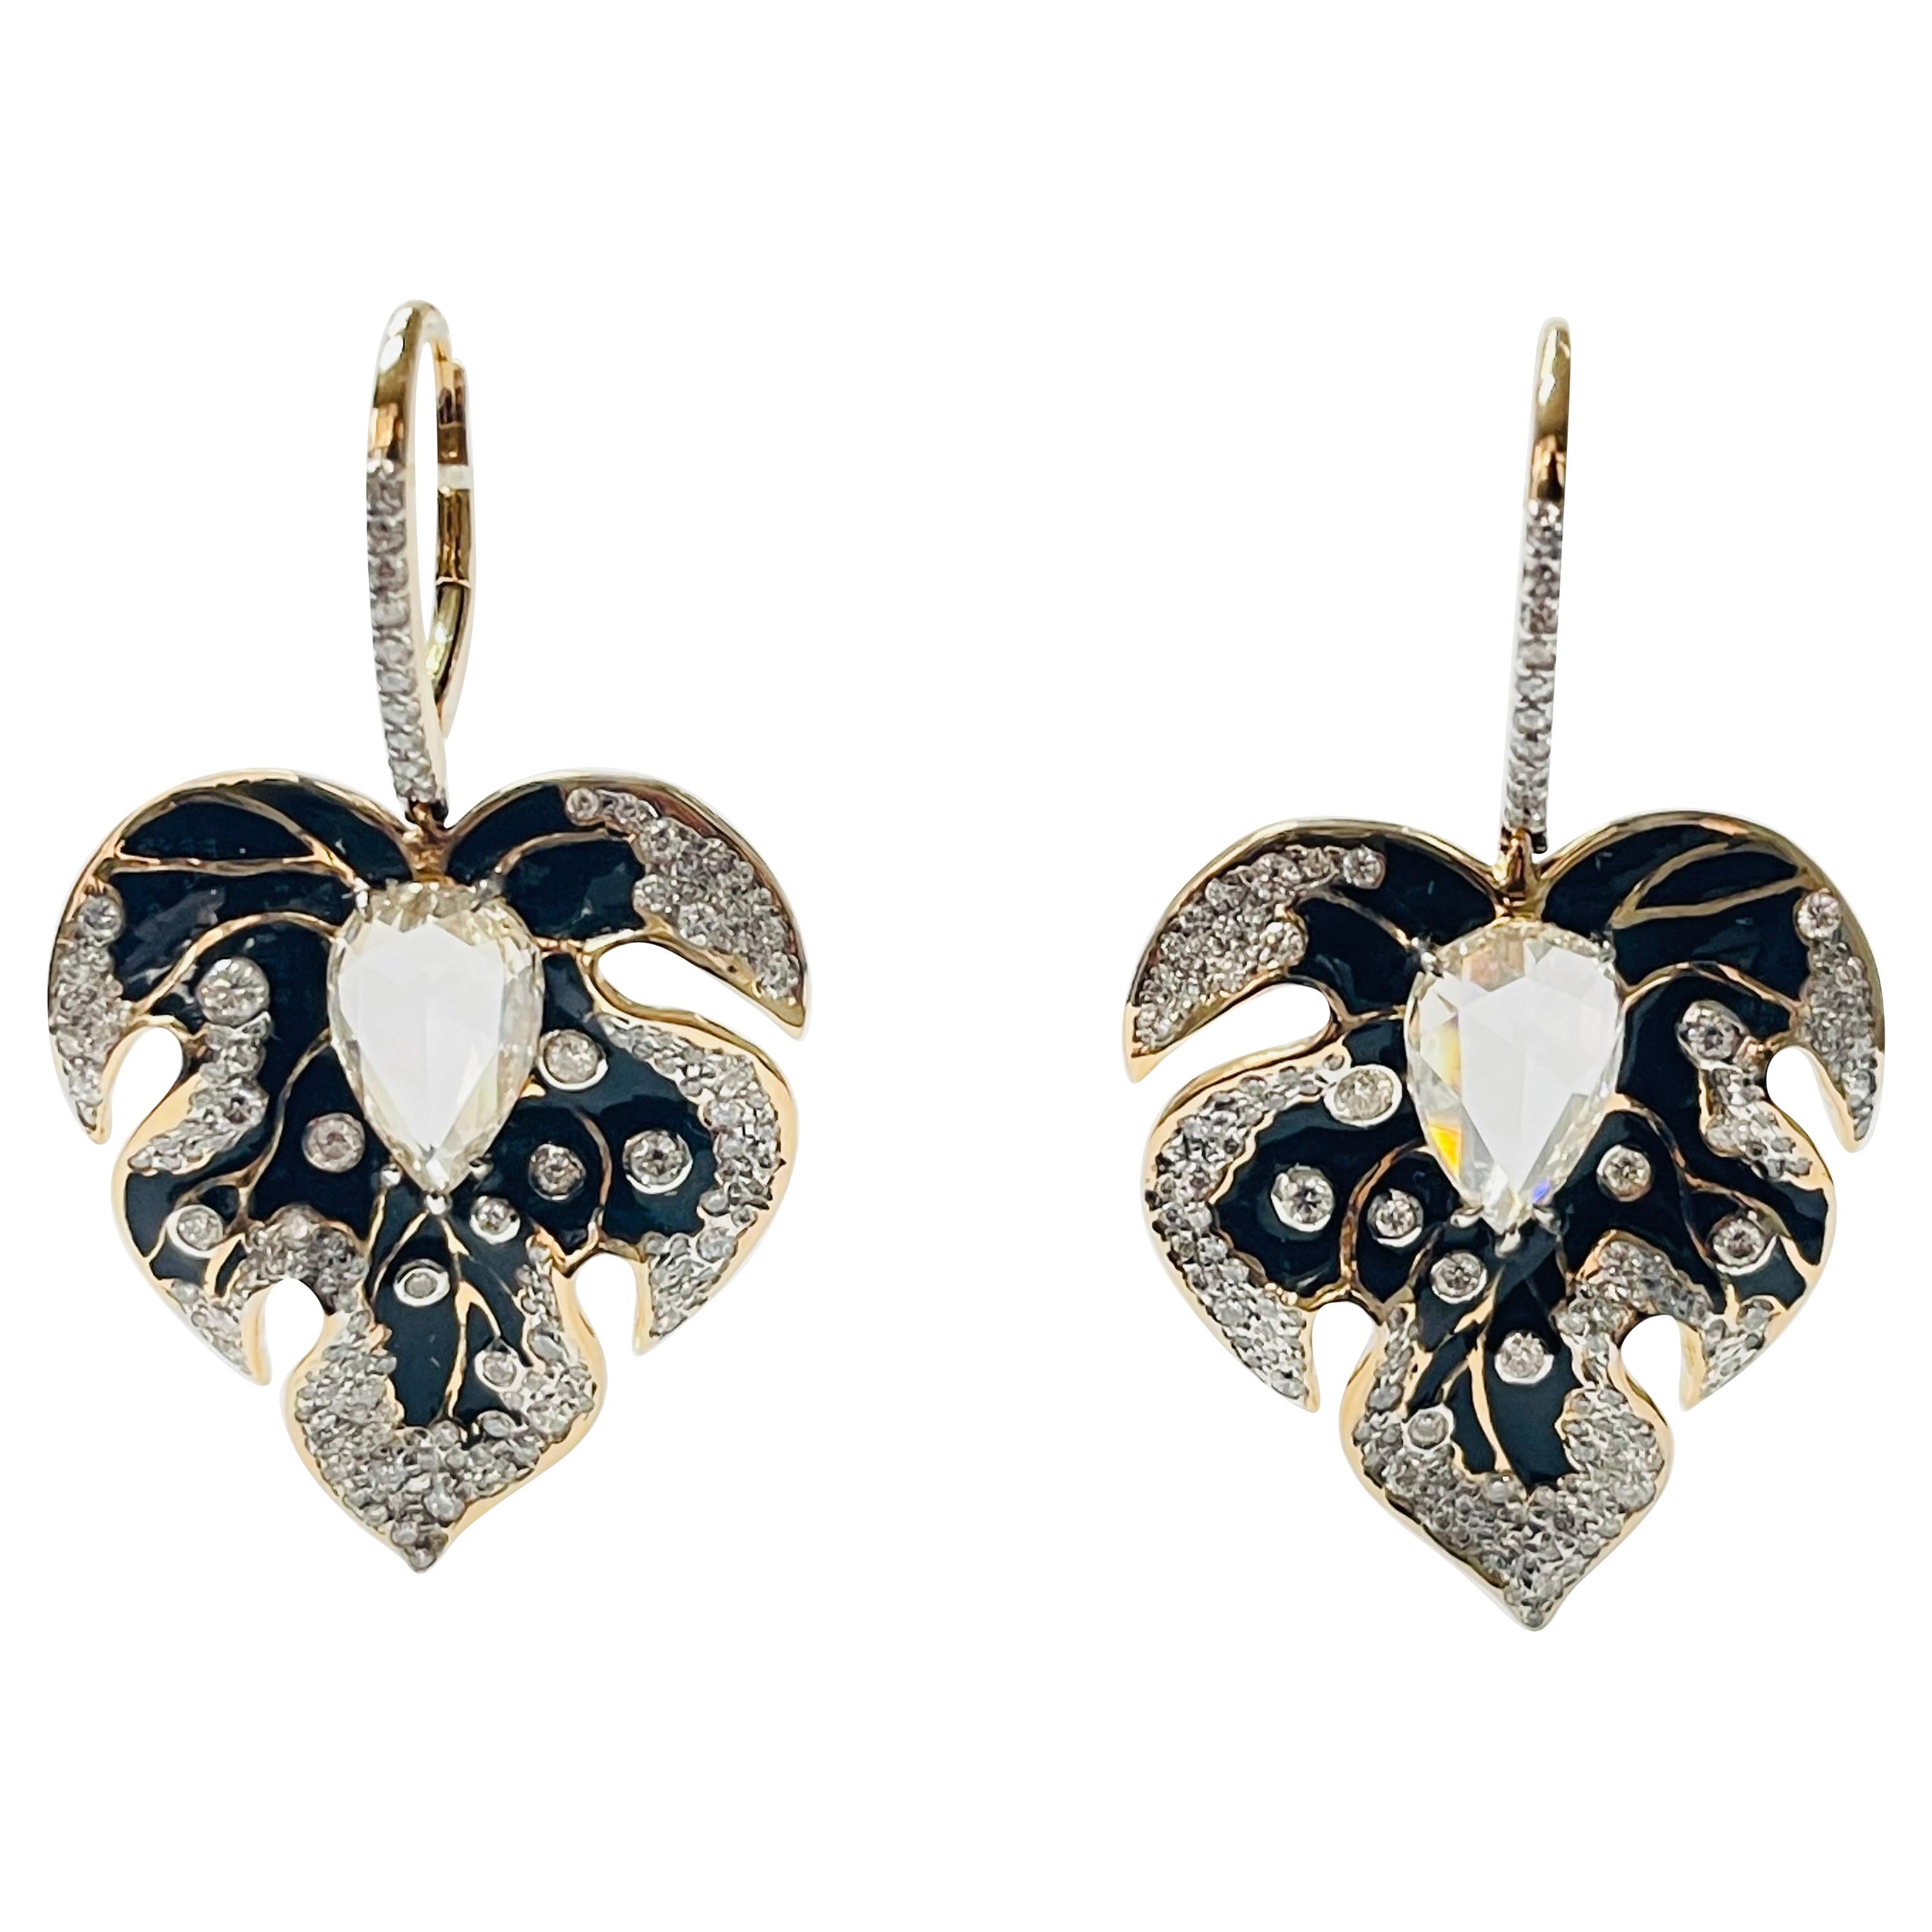 Pear Shape Diamond And Enamel Chandelier Earrings In 18 K Gold. 